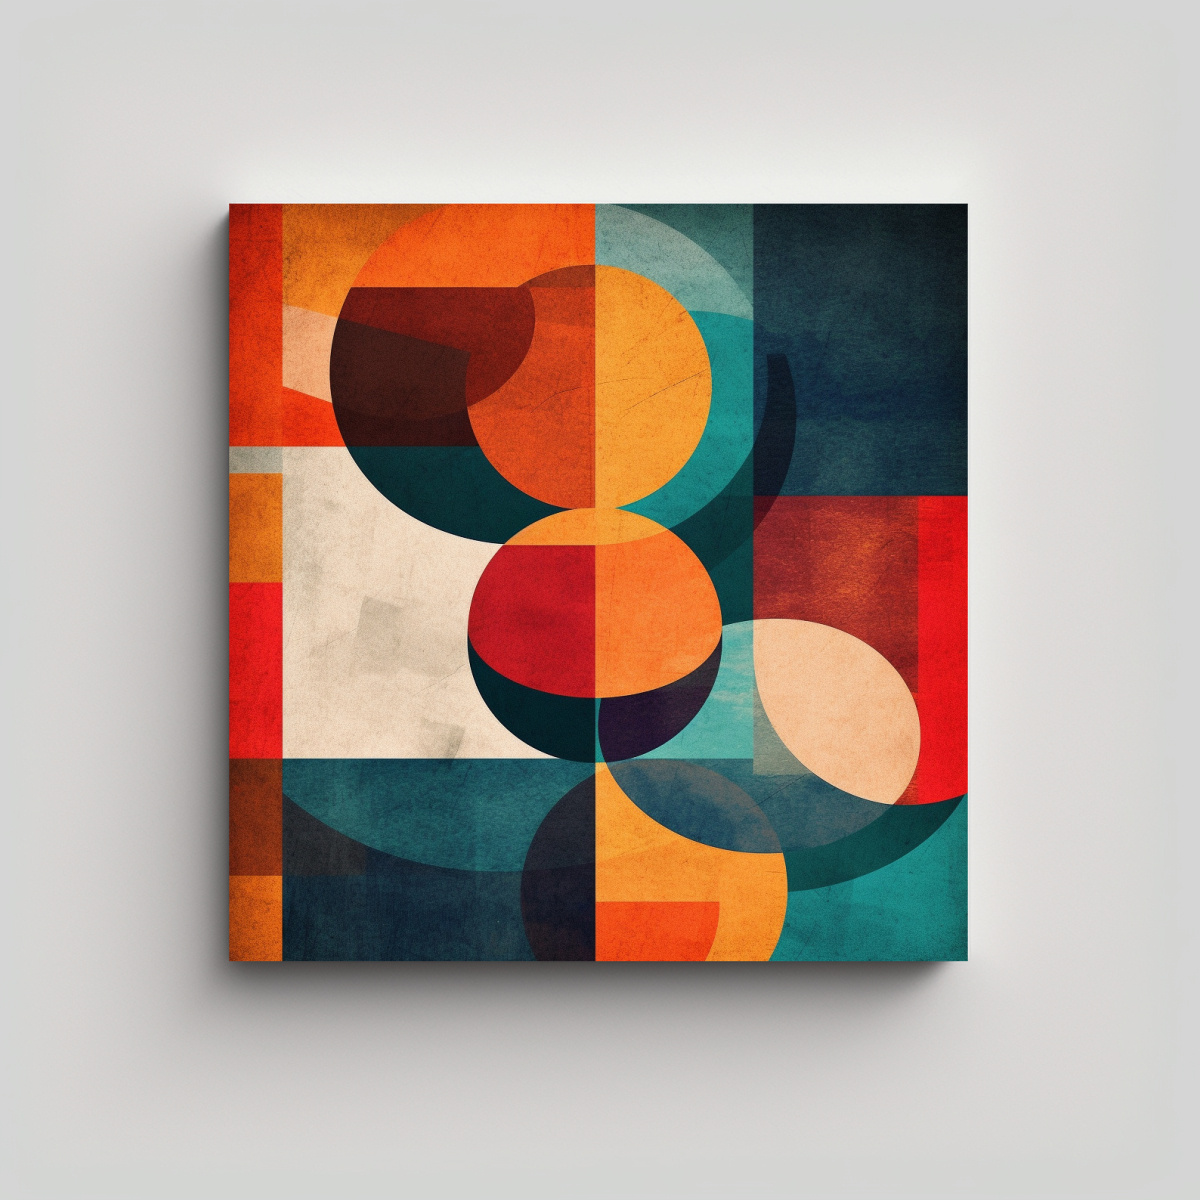 Cuadro De Decoraci N De Arte De Pared Equilibrio Visual Con Formas Superpuestas En Colores